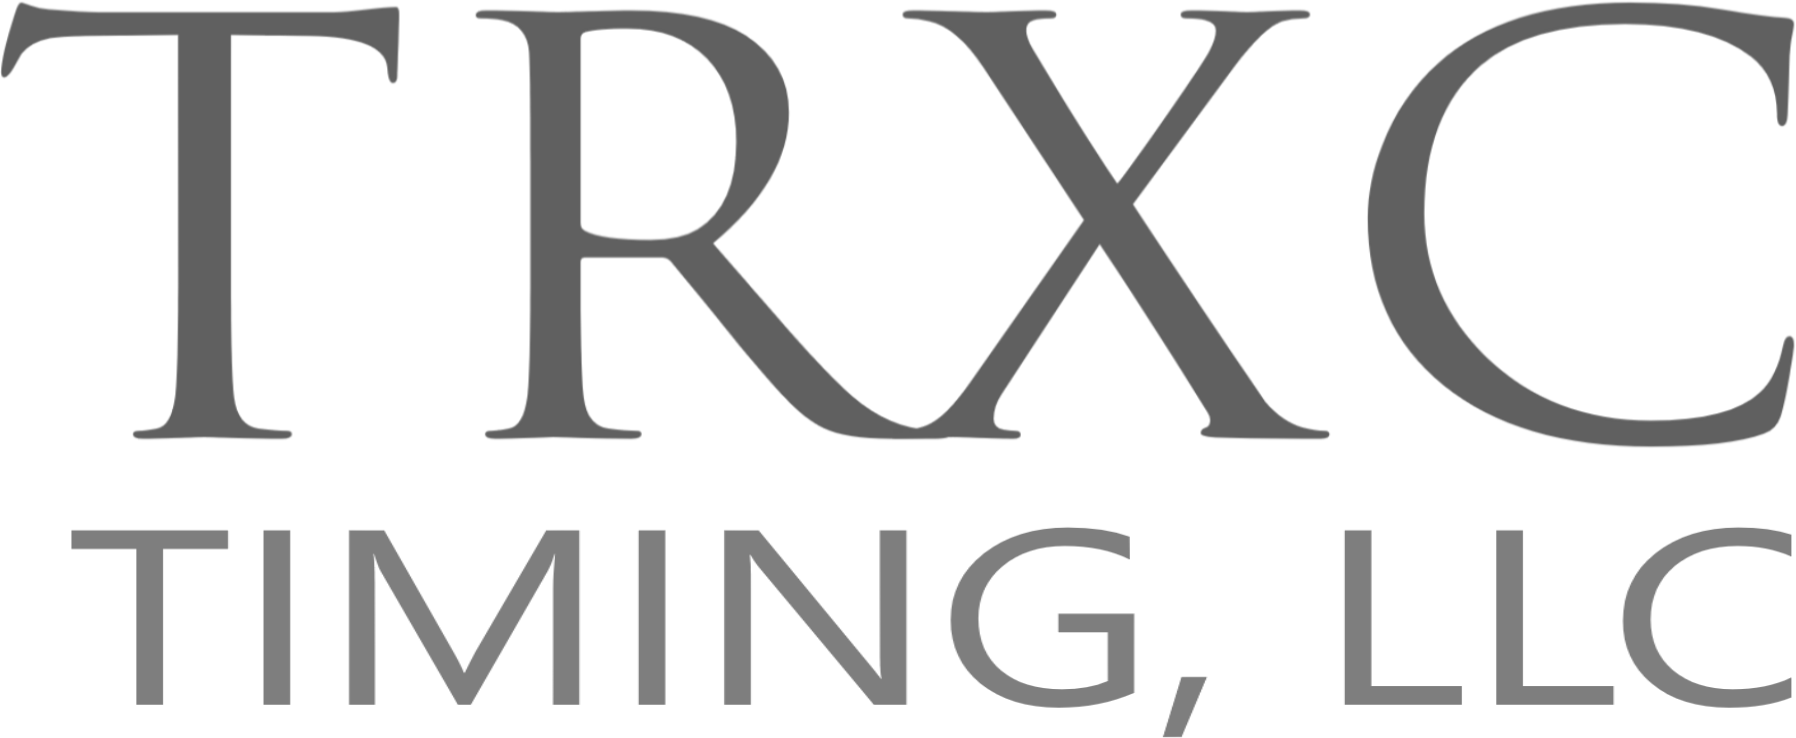 TRXC logo